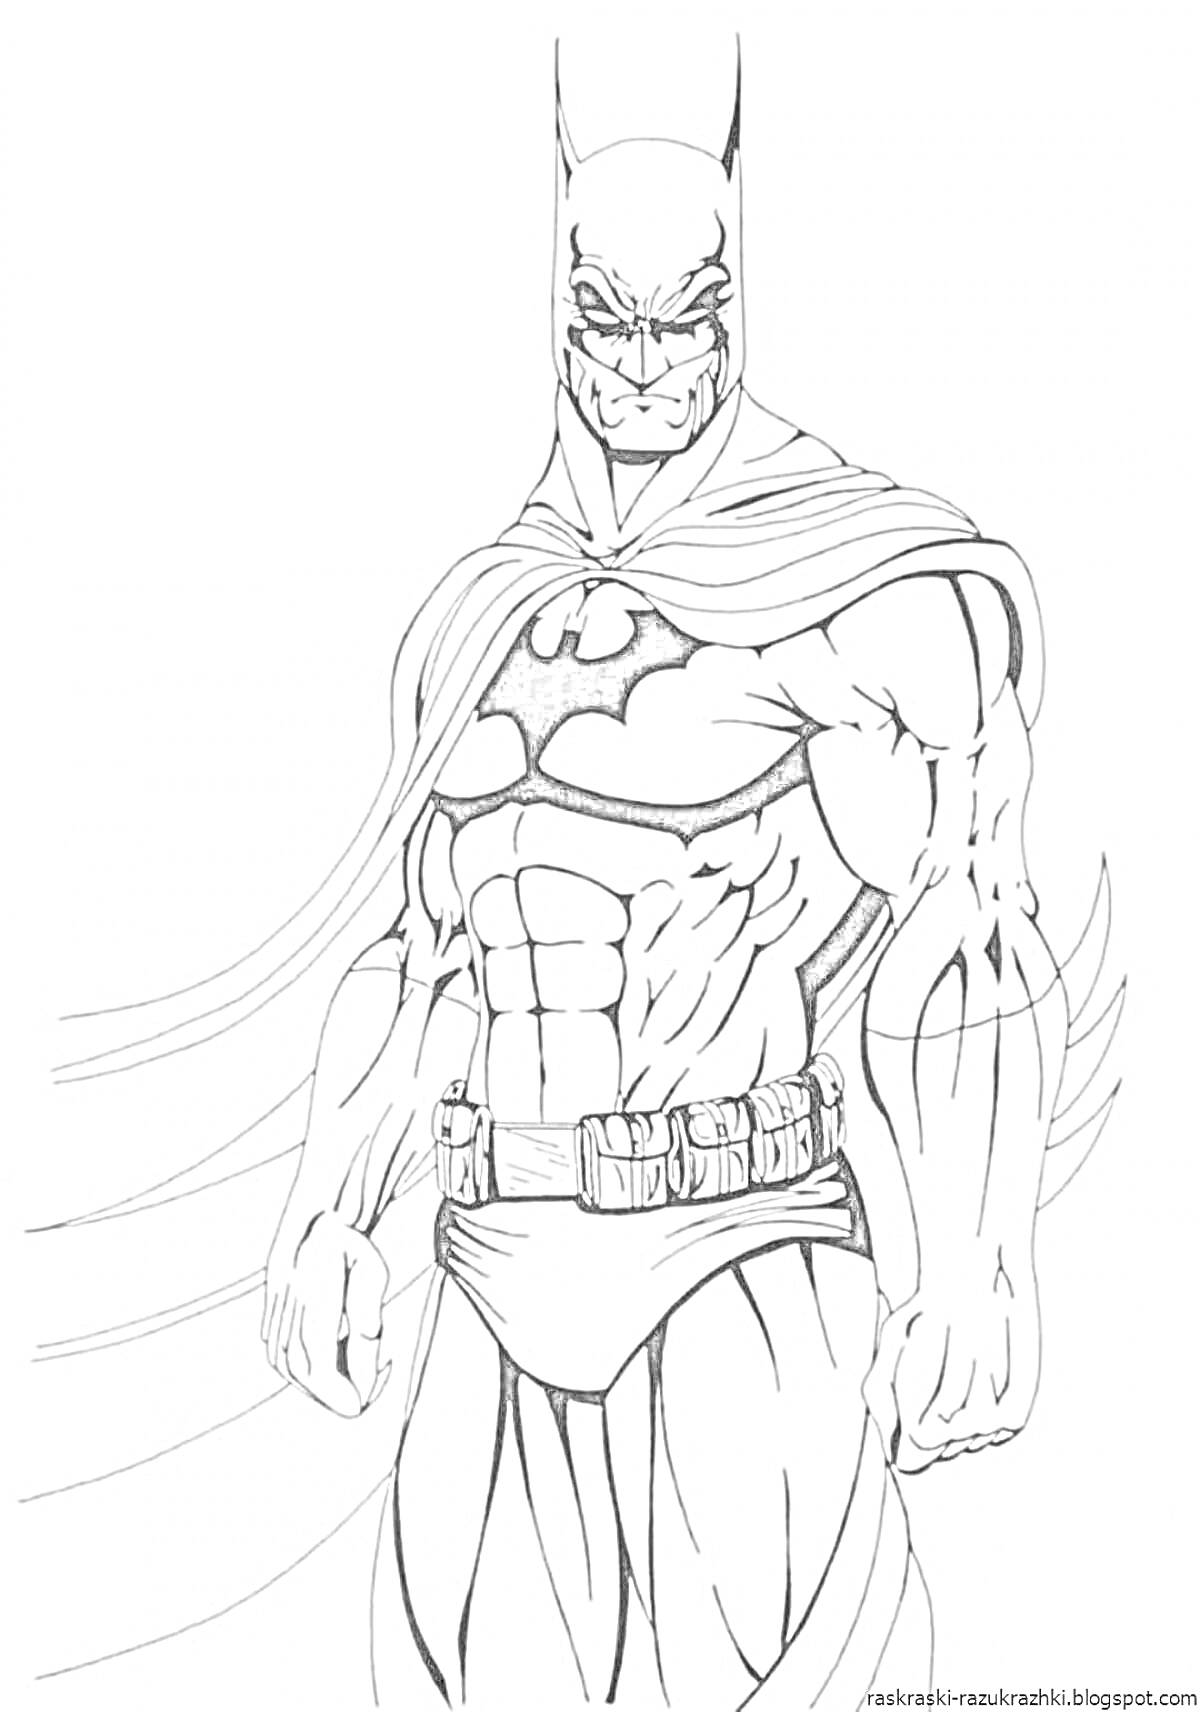 РаскраскаБэтмен в плаще и маске с поясом и символом на груди